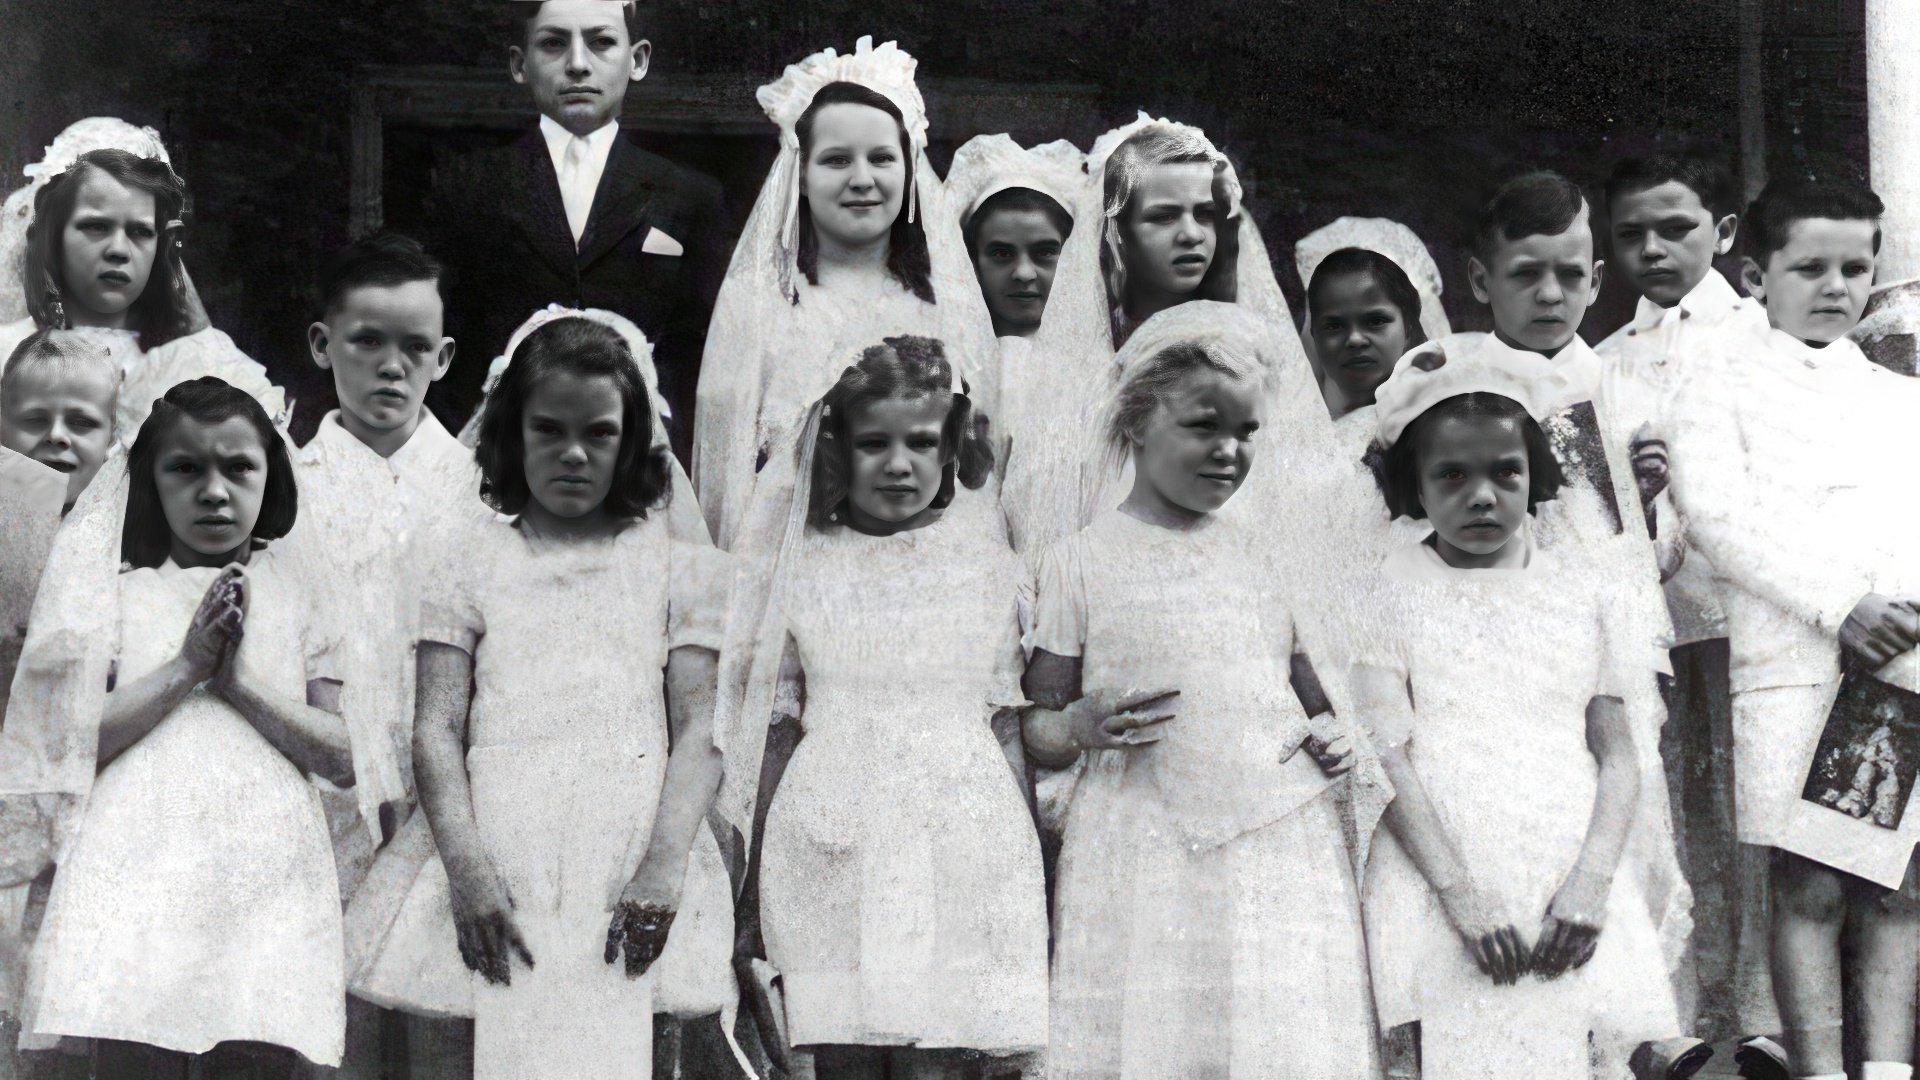 As a child, Jack Nicholson sang in the church choir